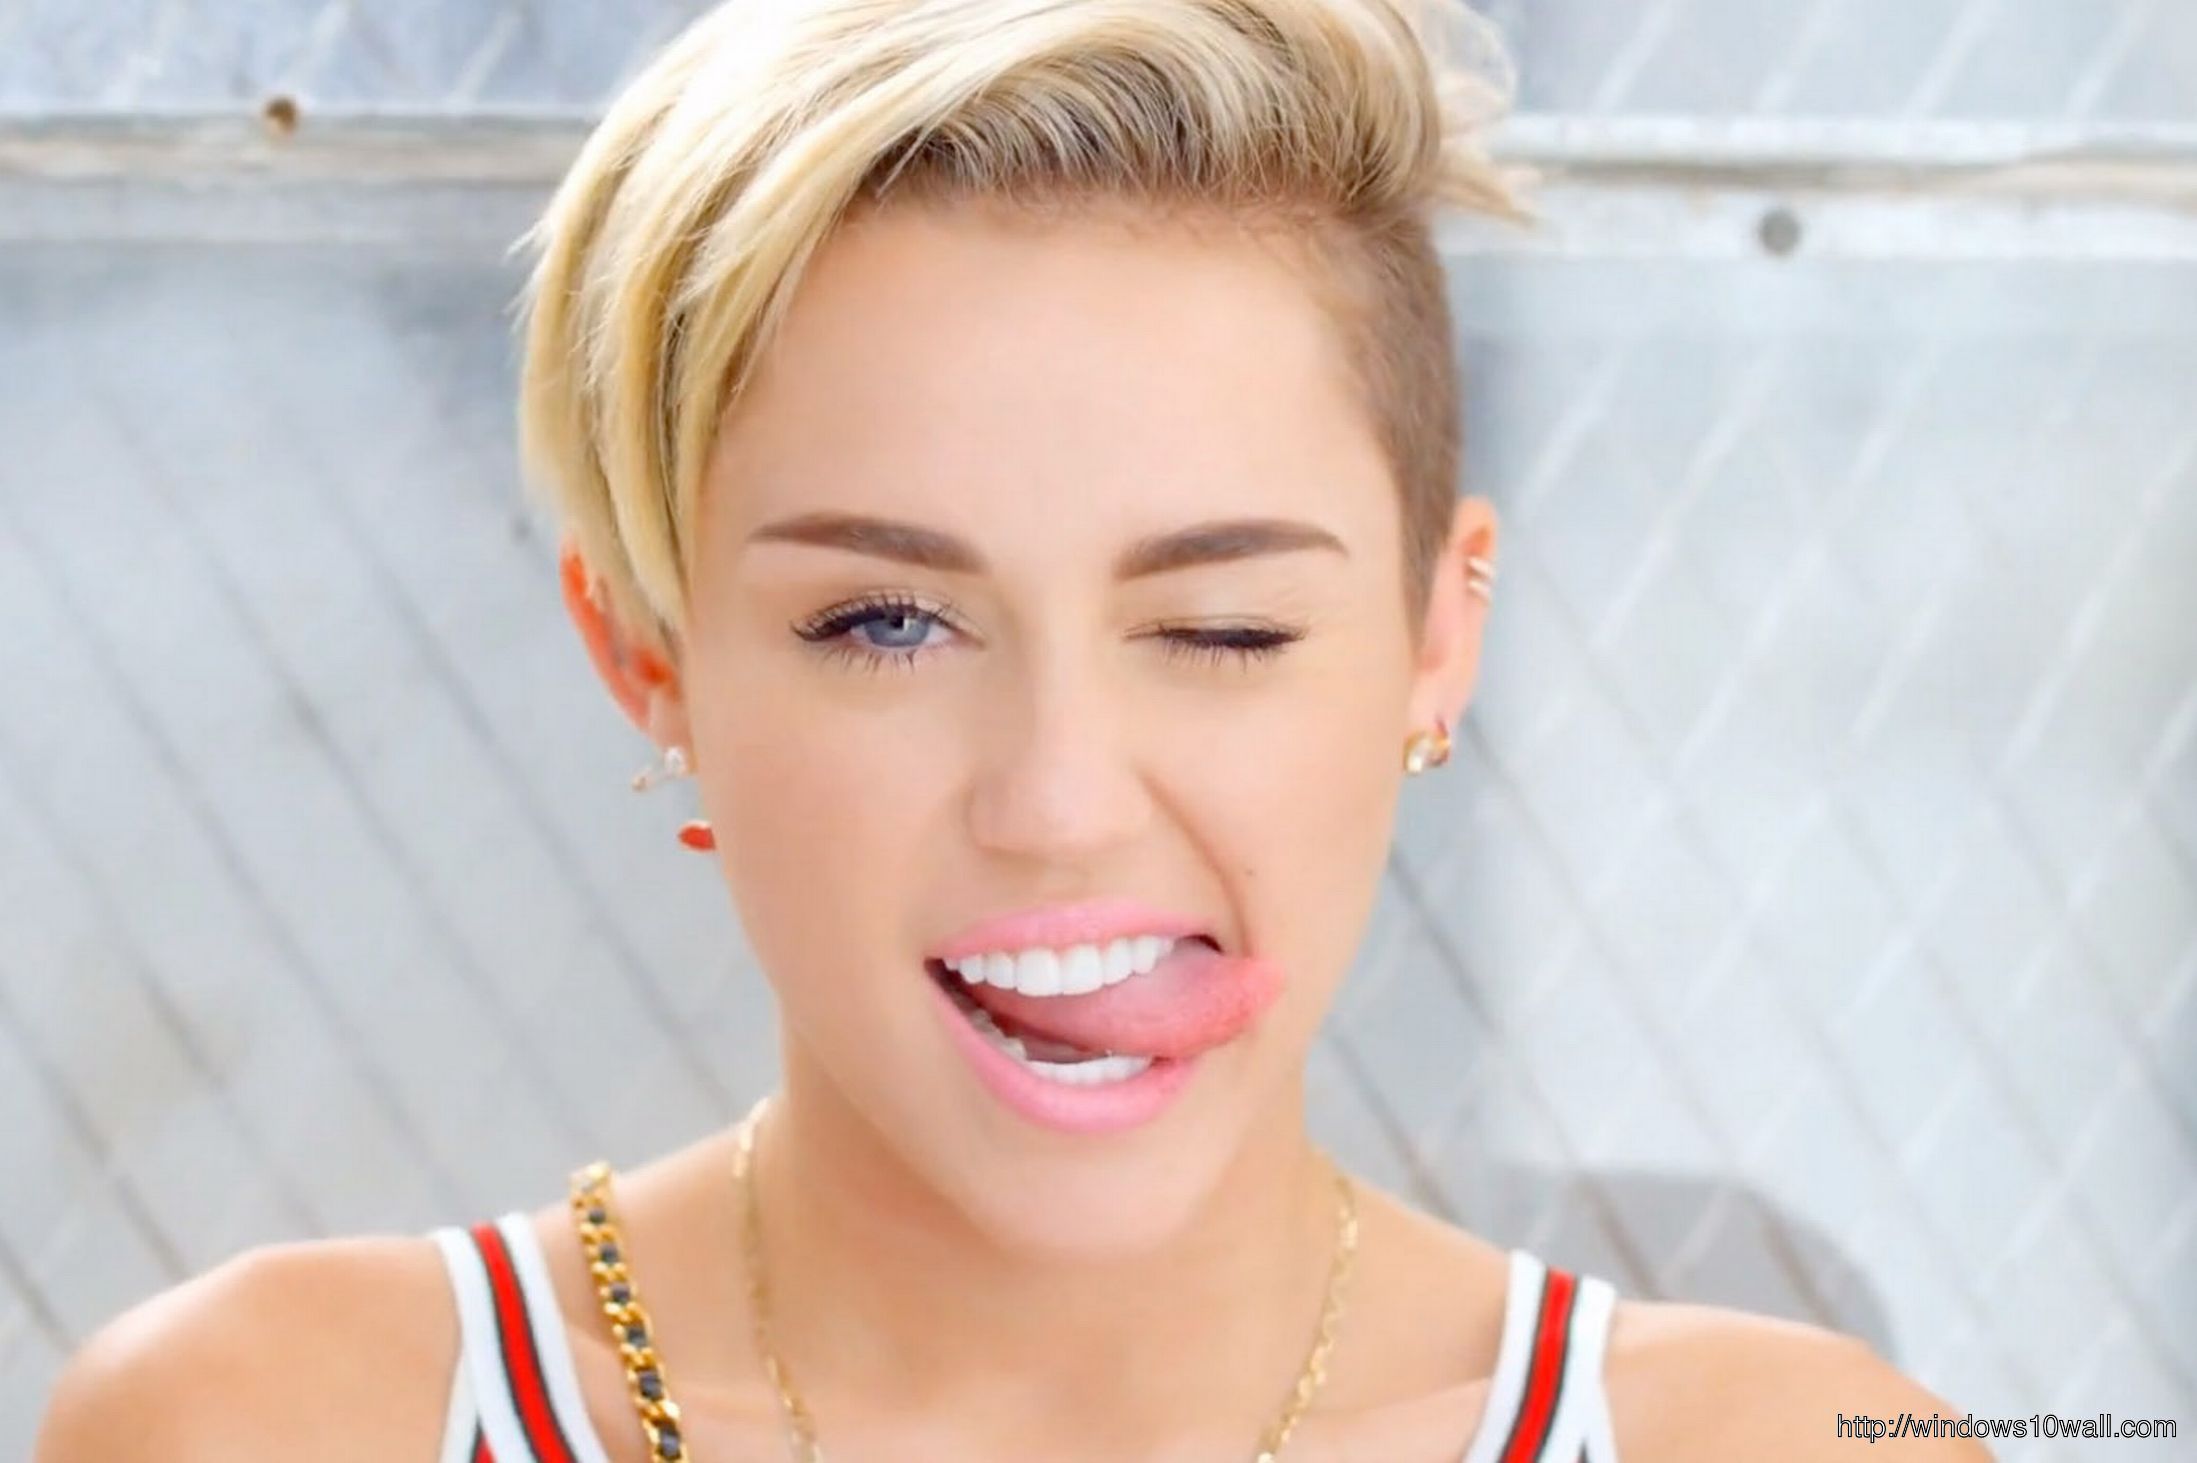 Showing Tongue Miley Cyrus Wallpaper